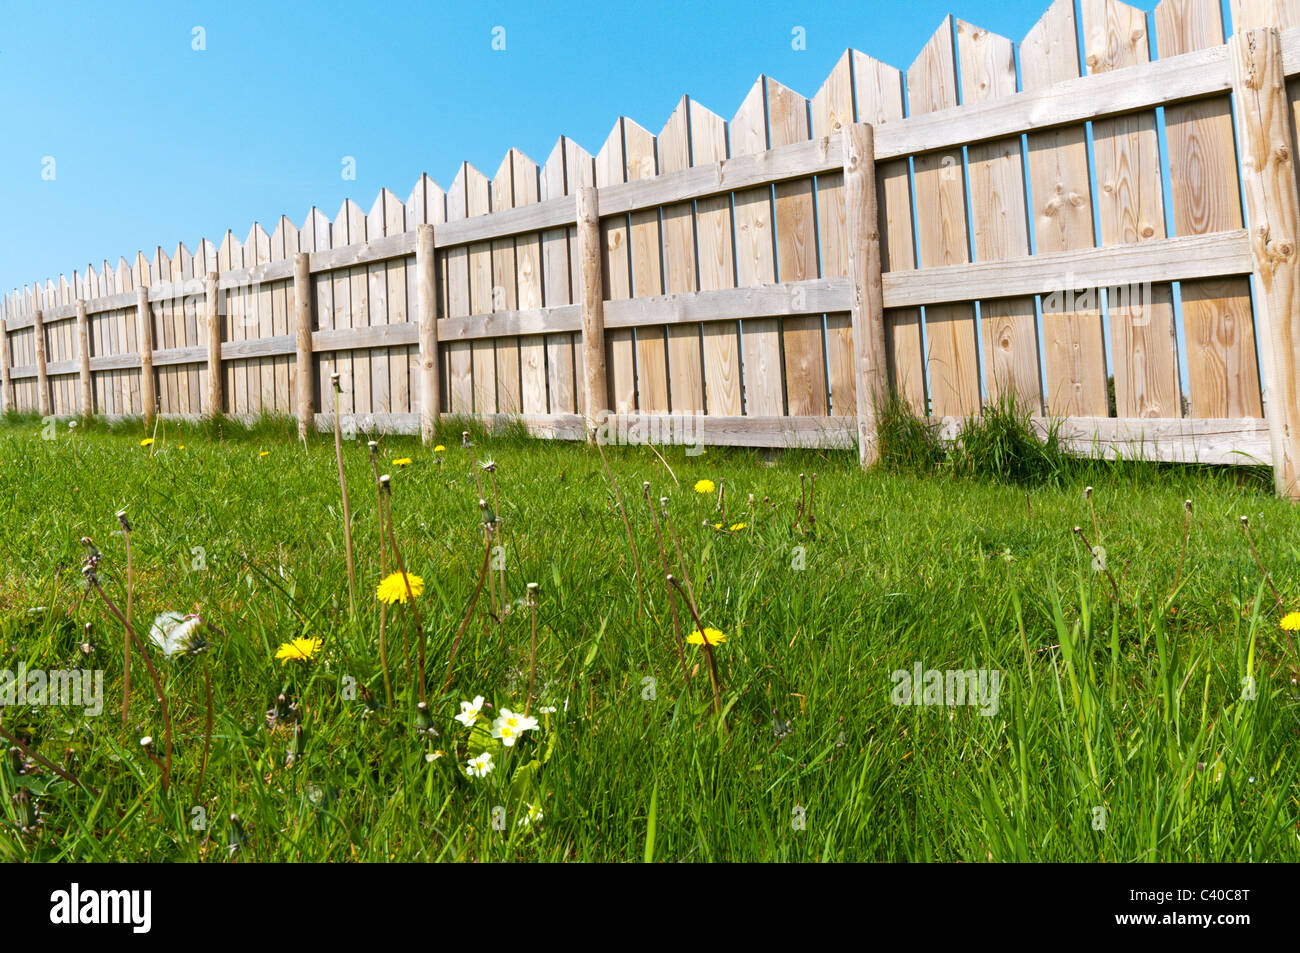 Un giardino in legno recinto visto contro un cielo blu chiaro. Foto Stock